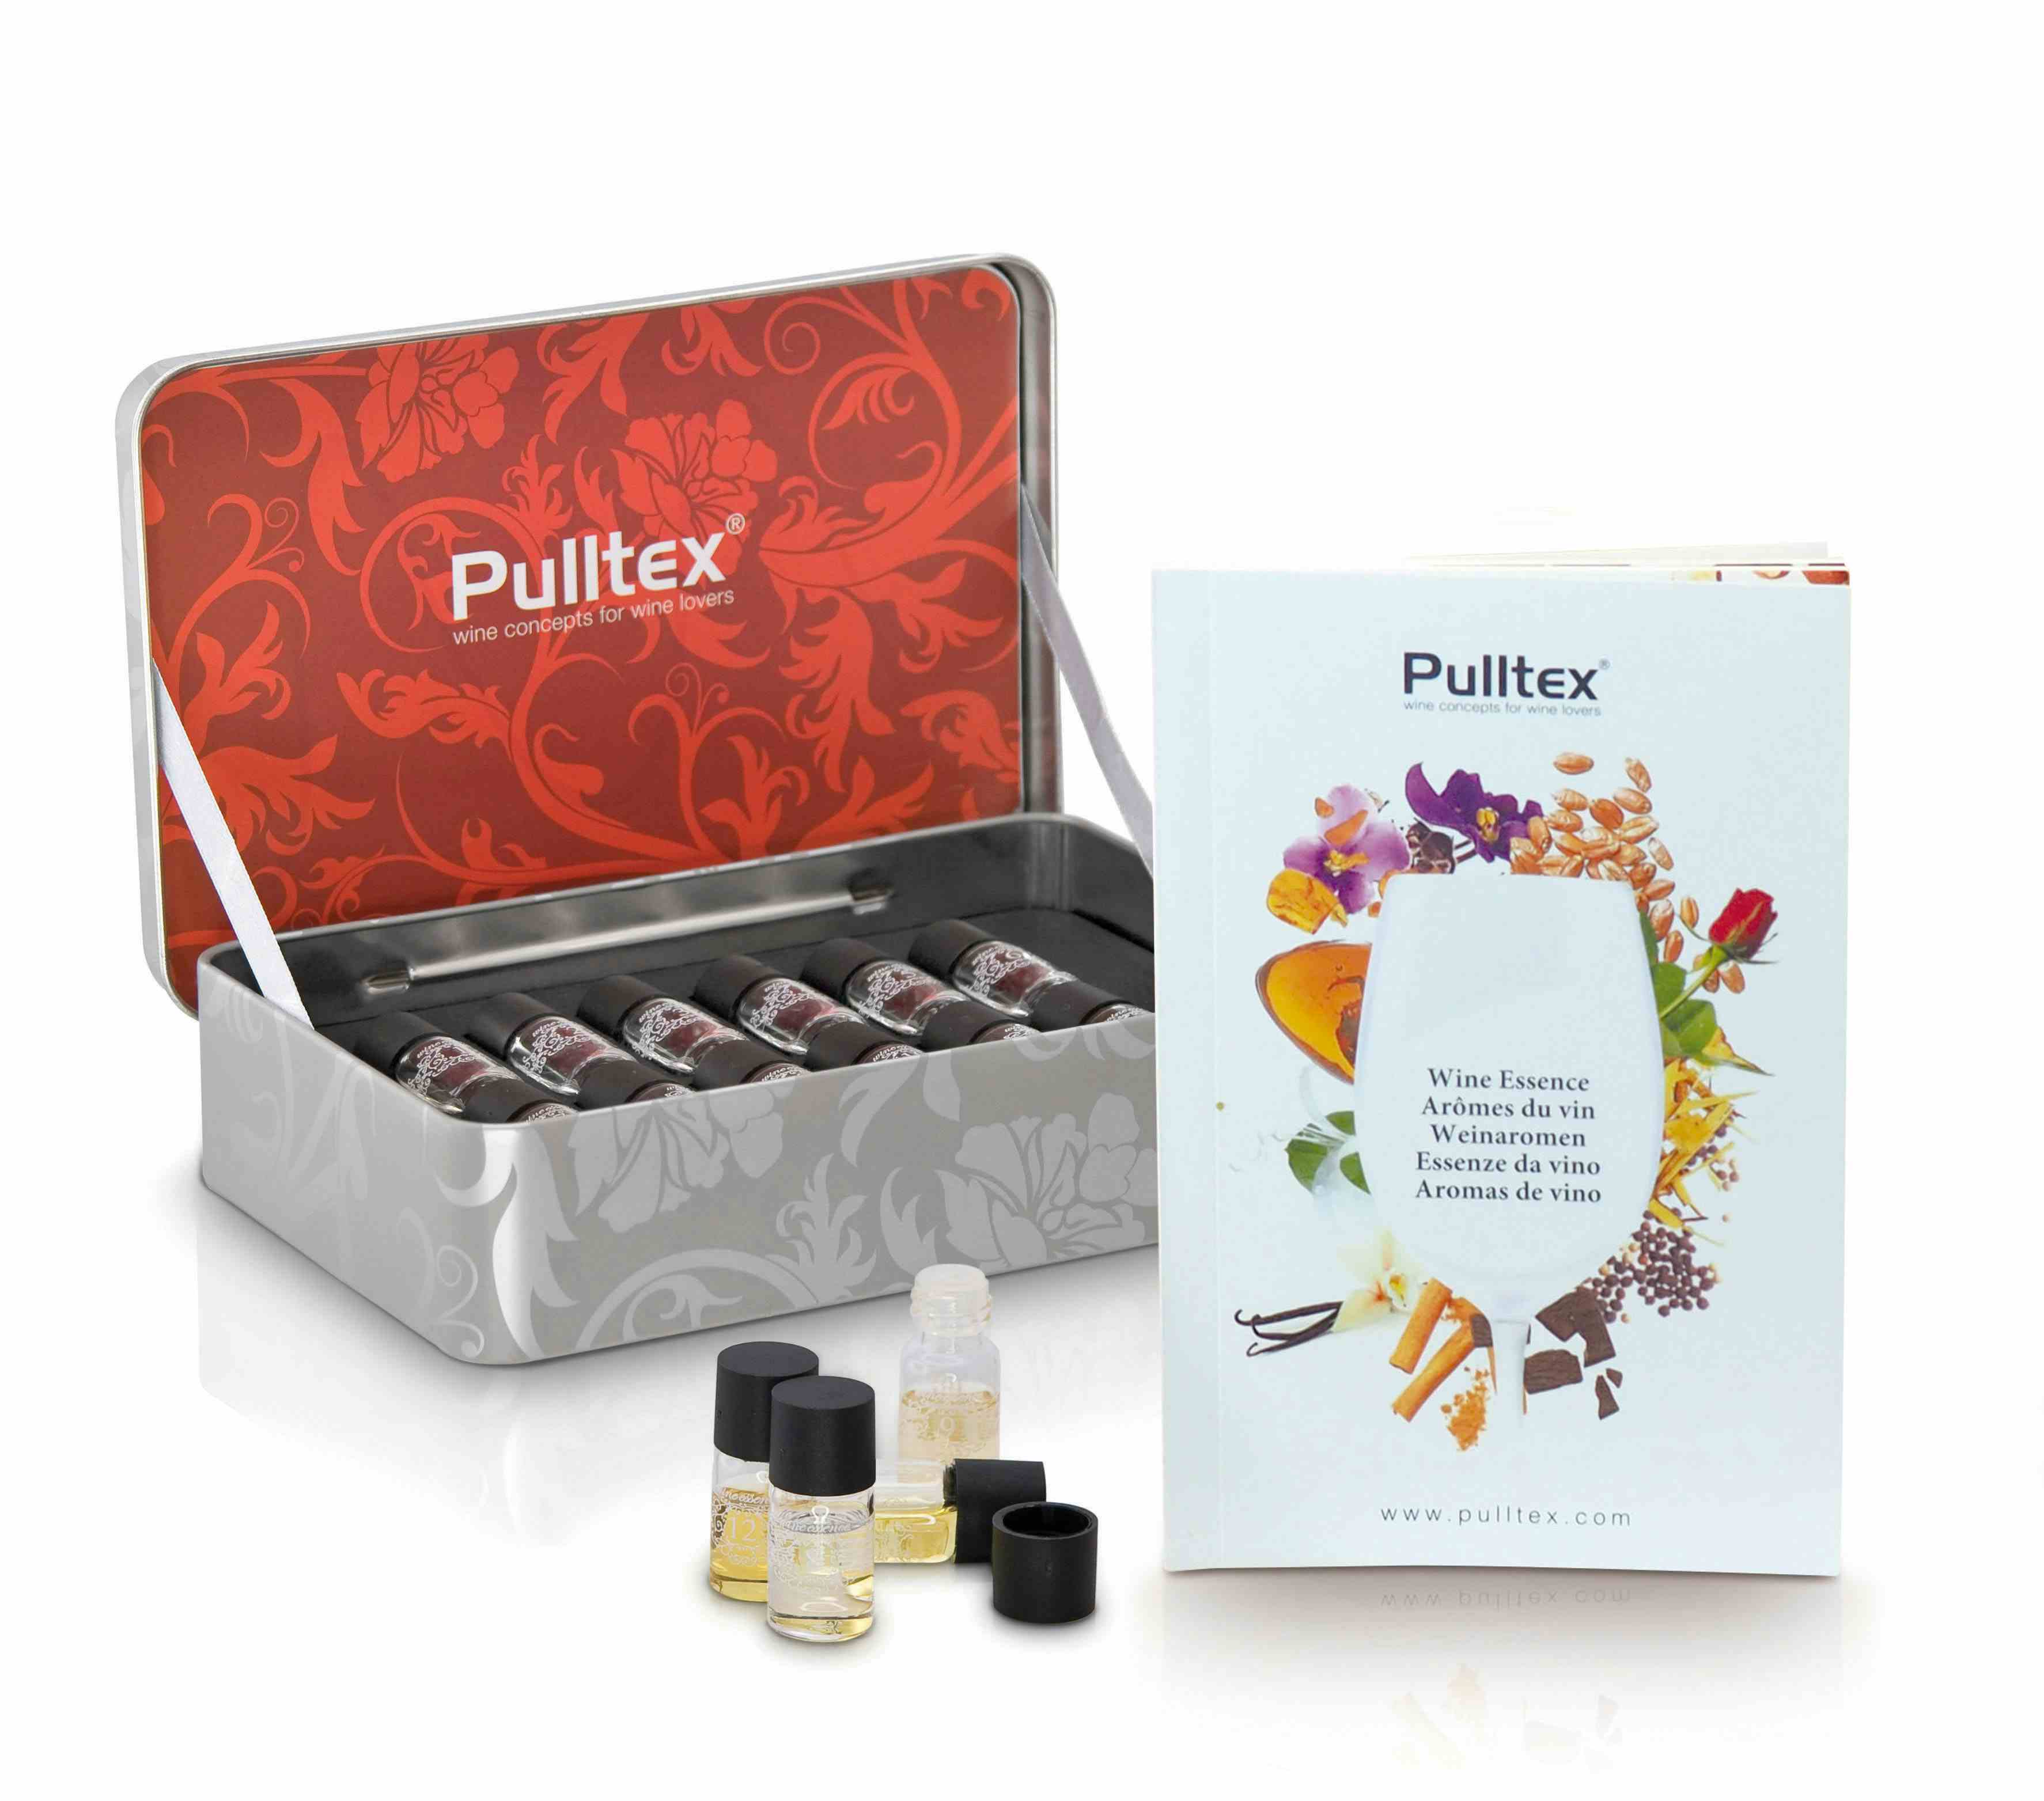 PULLTEX, Doftset för röda viner 12-pack